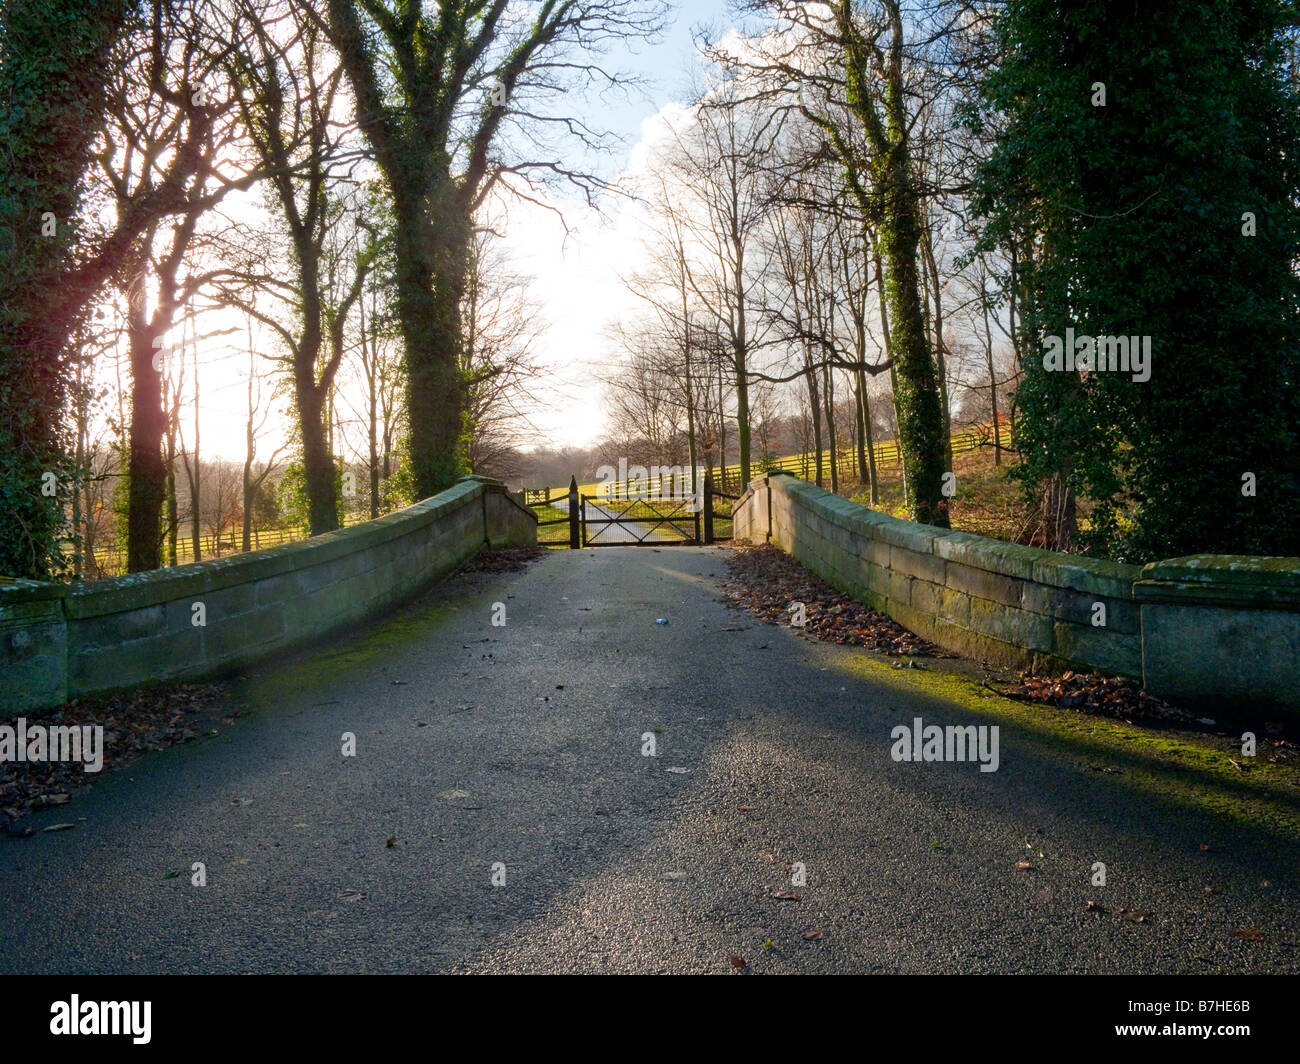 Rurale corsia unica strada oltre il ponte che conduce alla porta circondato da alberi di alto fusto Foto Stock